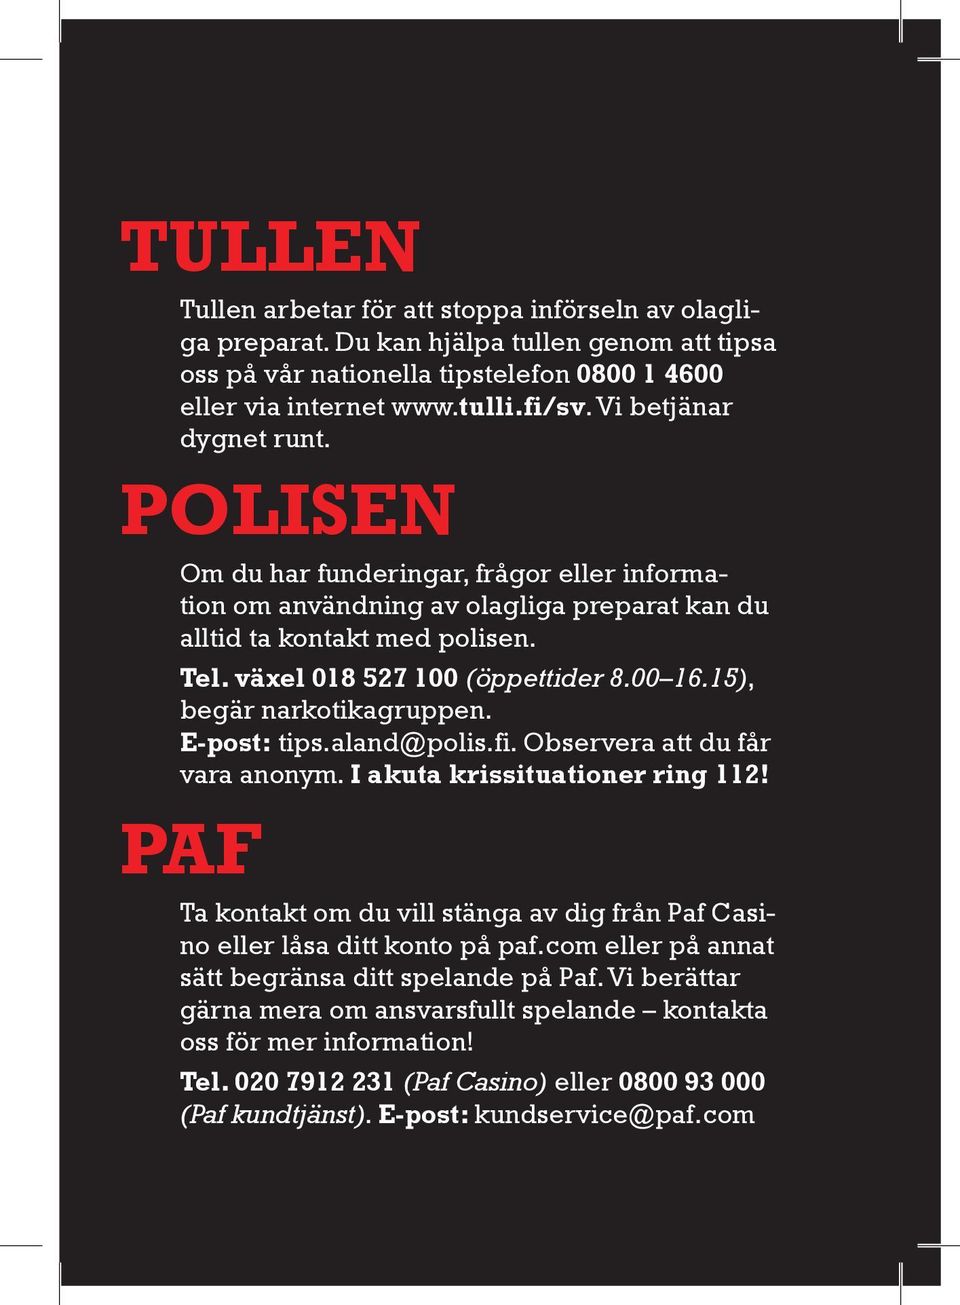 15), begär narkotikagruppen. E-post: tips.aland@polis.fi. Observera att du får vara anonym. I akuta krissituationer ring 112!